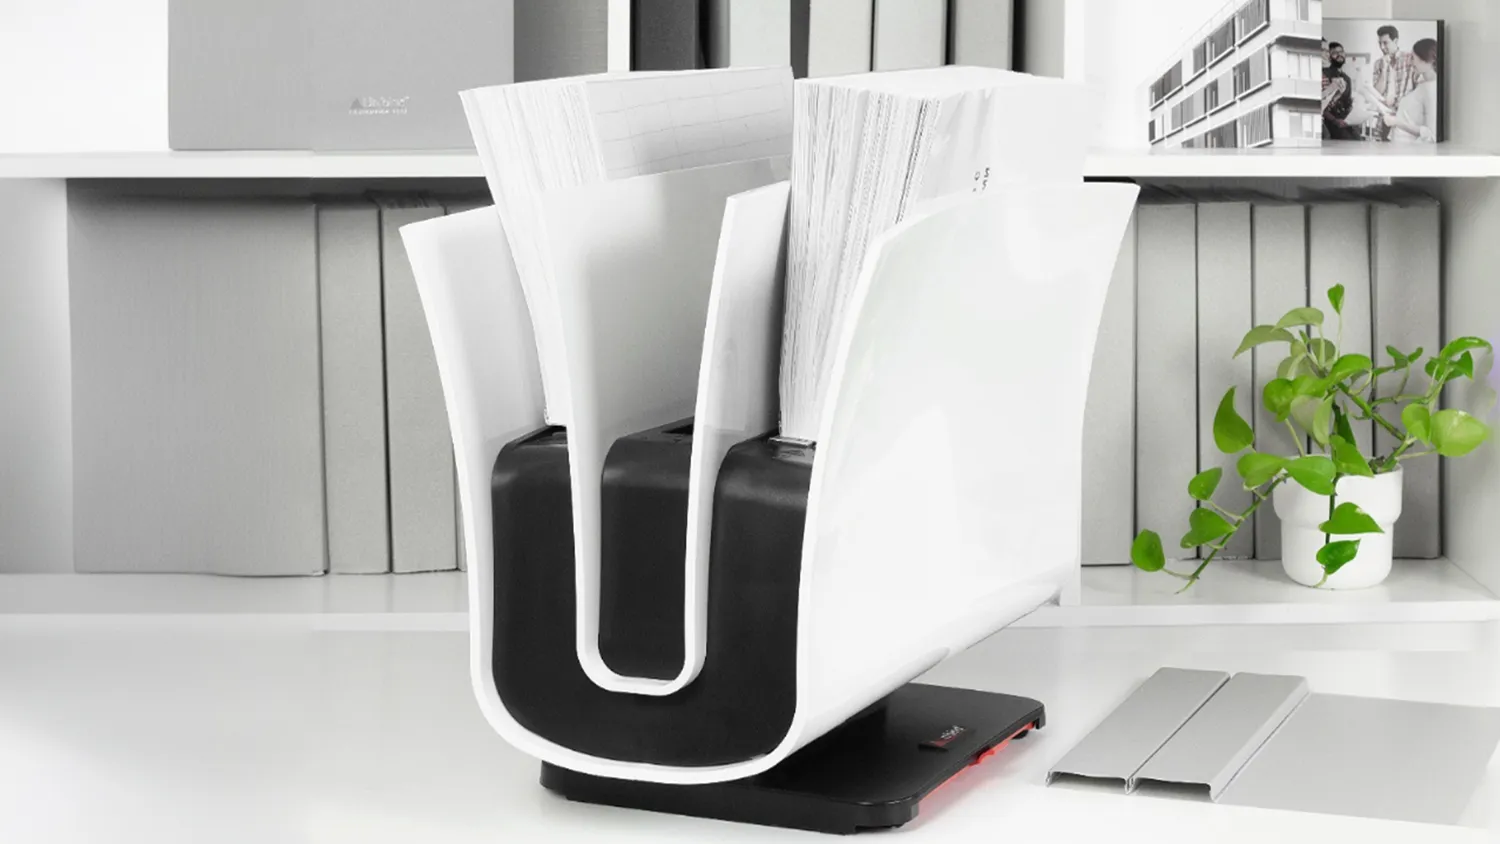 Умная система переплета документов в офисе – технология UniBind